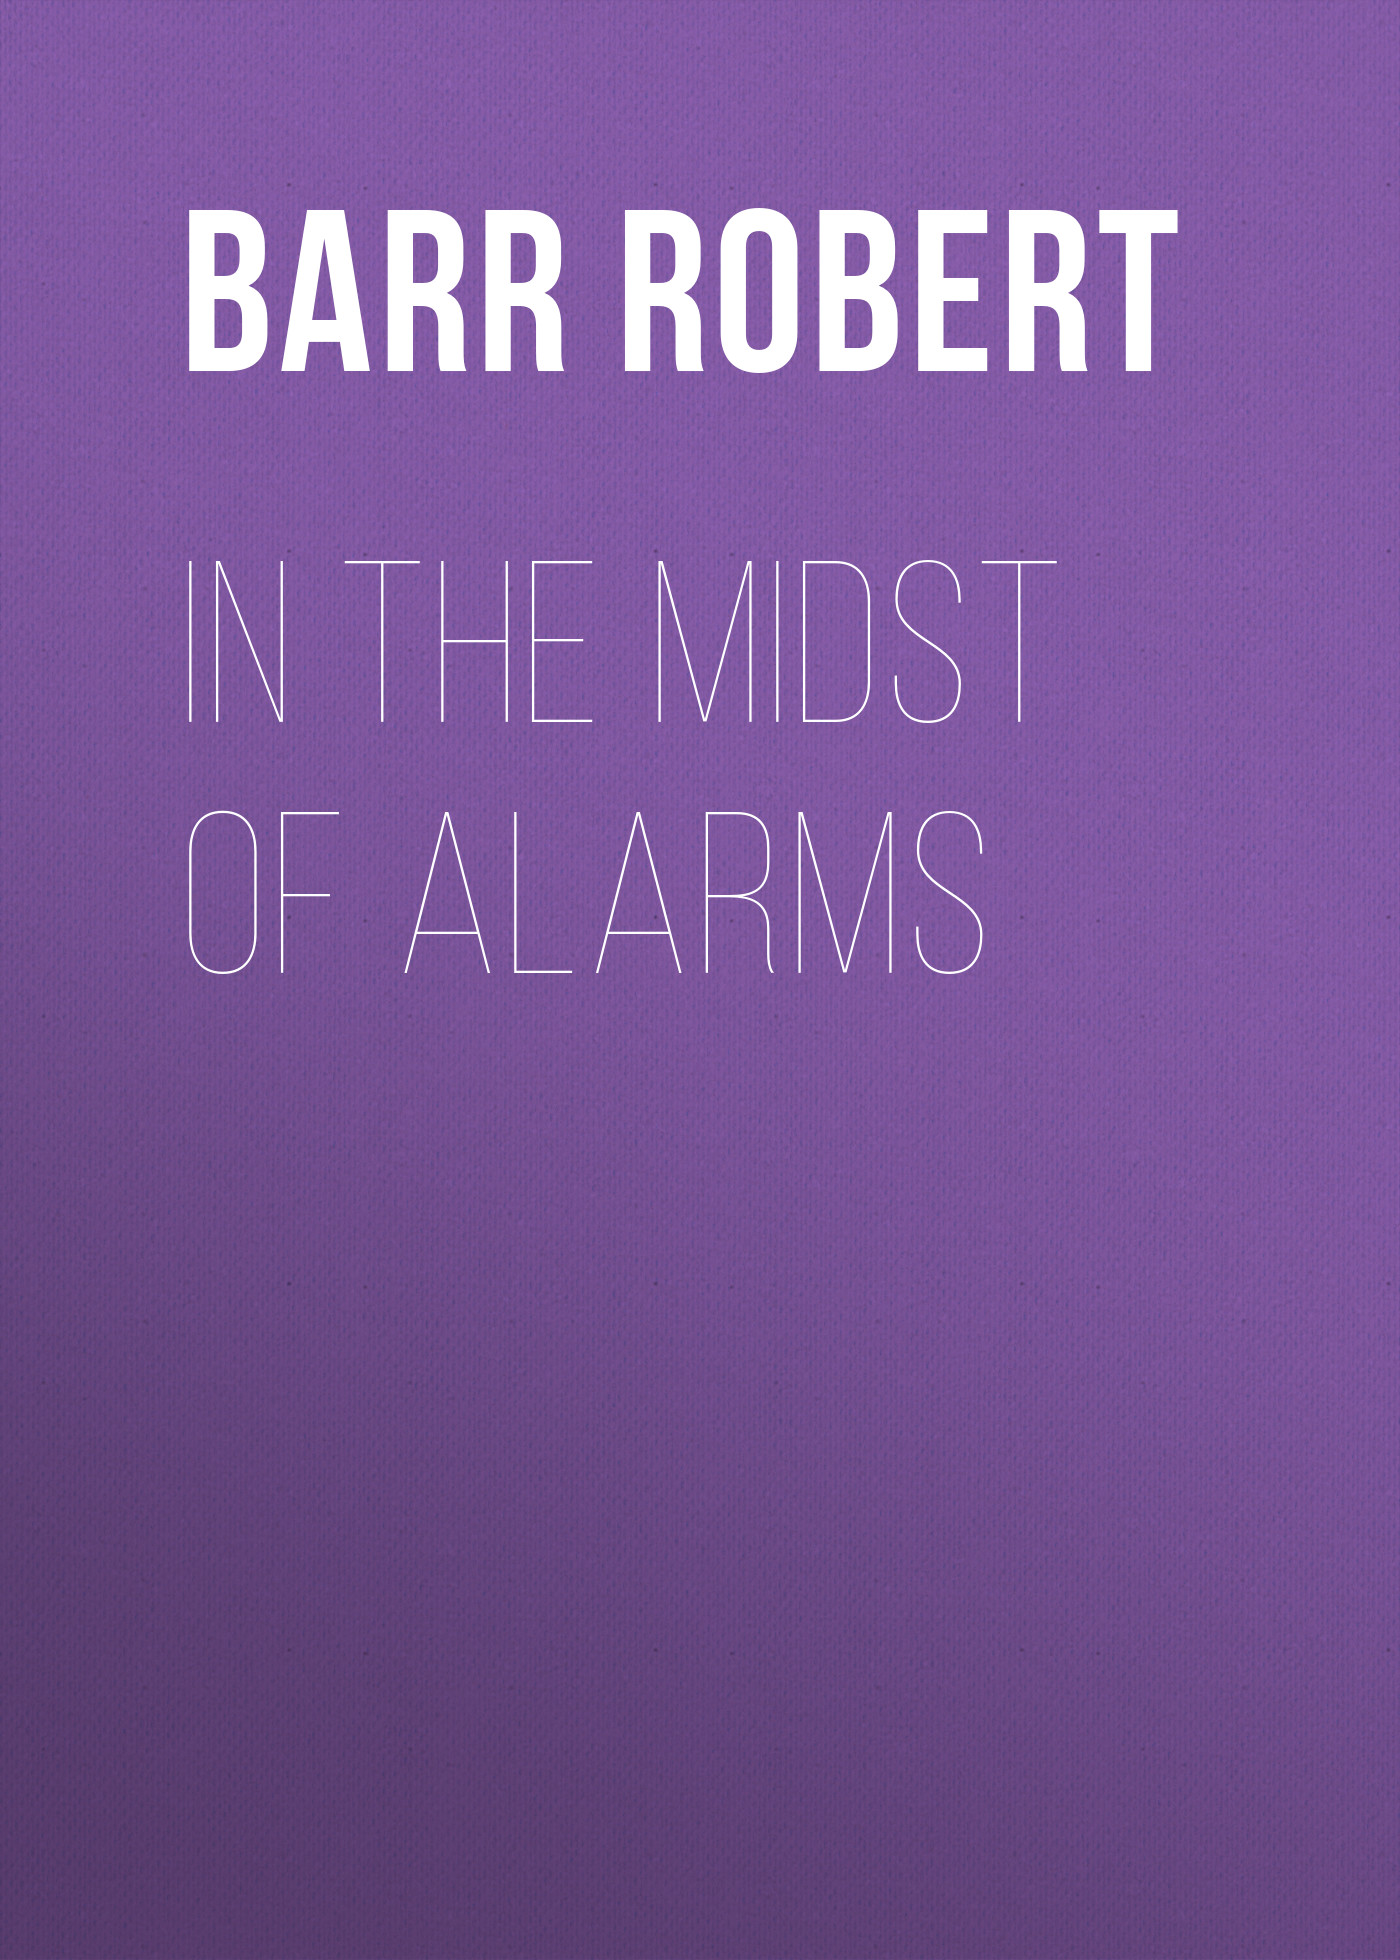 Книга In the Midst of Alarms из серии , созданная Robert Barr, может относится к жанру Зарубежная классика, Зарубежная старинная литература. Стоимость электронной книги In the Midst of Alarms с идентификатором 36363414 составляет 0 руб.